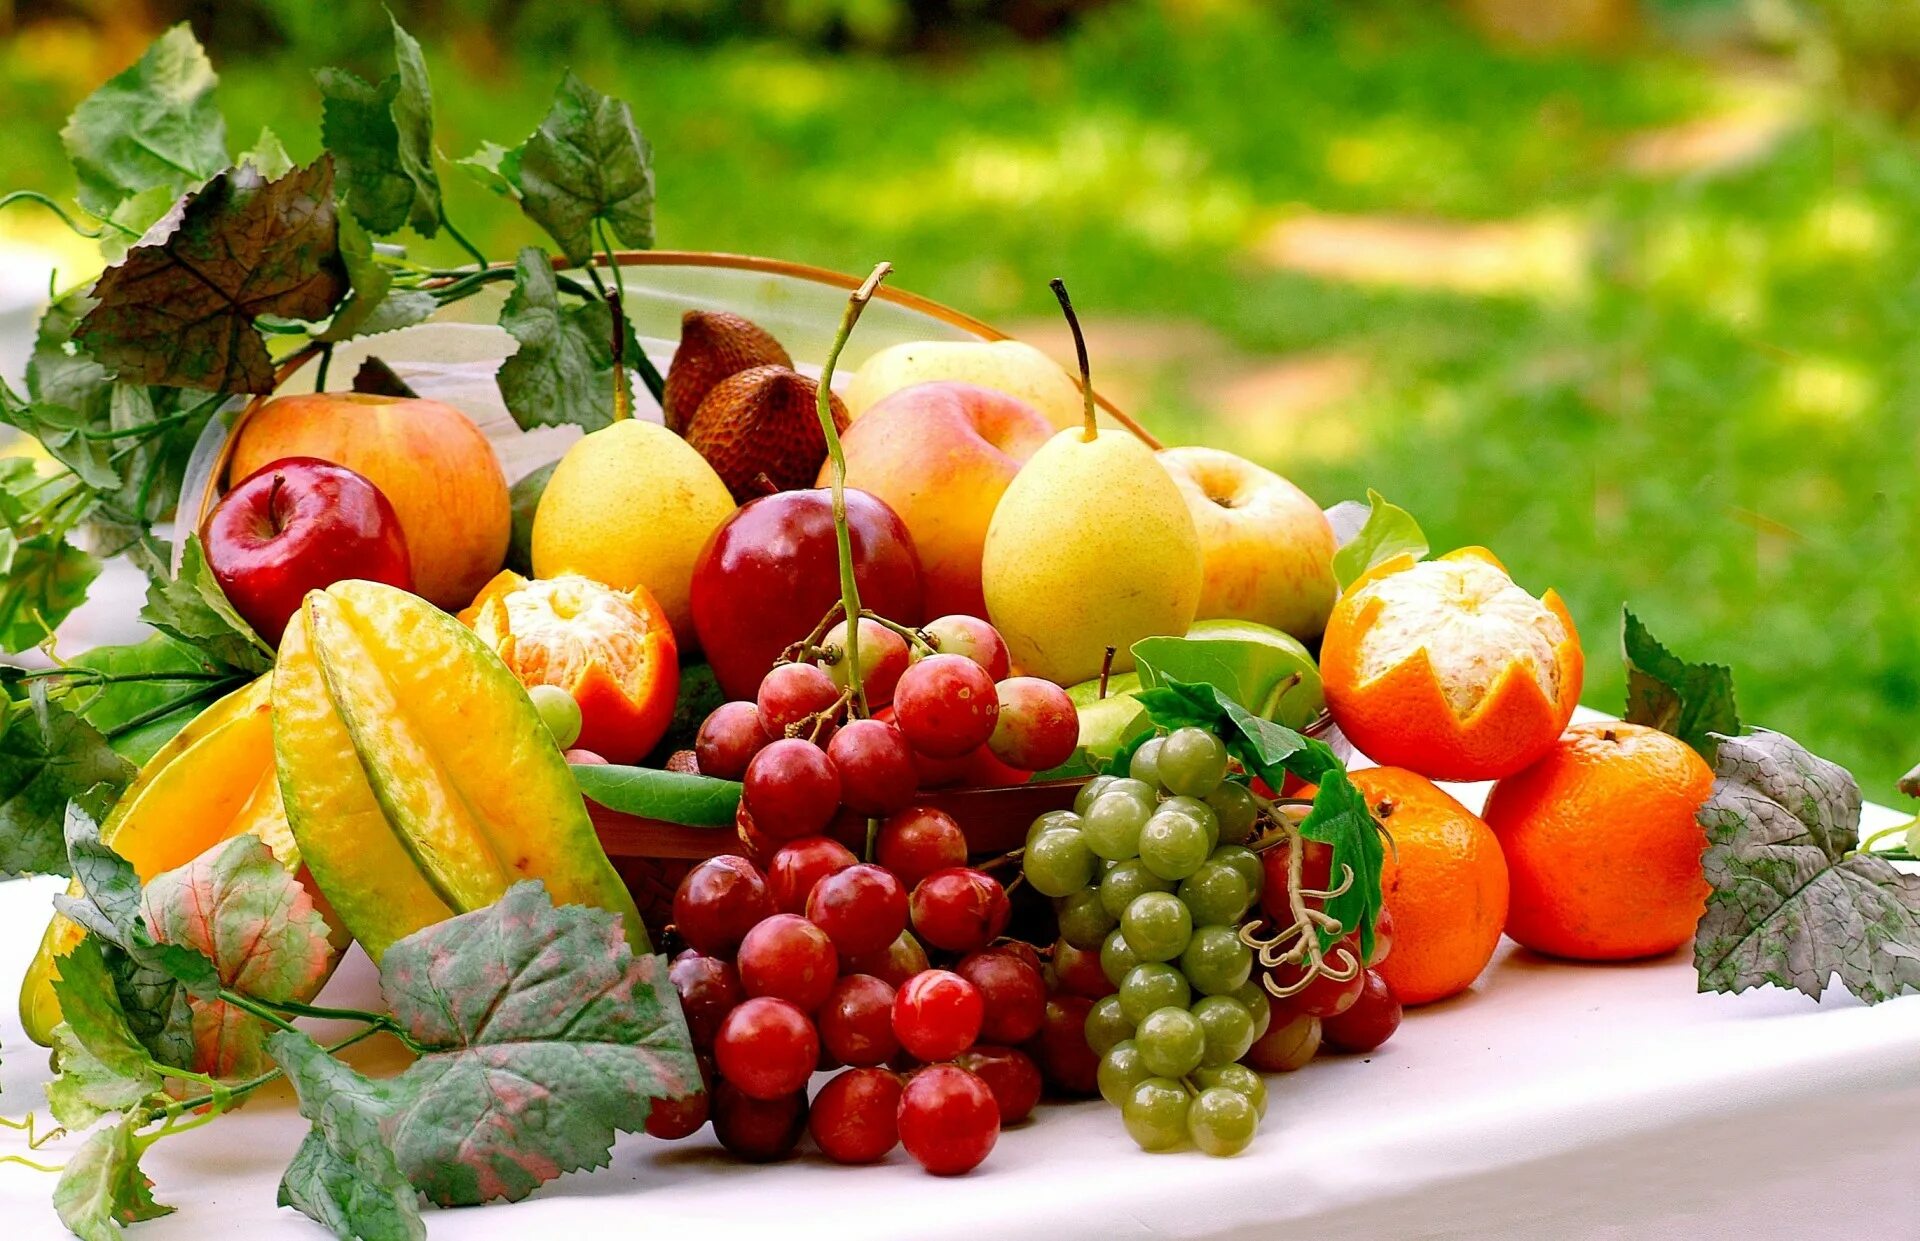 Лето время фруктов. Красивые фрукты. Овощи и фрукты. Сочные овощи и фрукты. Овощи, фрукты, ягоды.